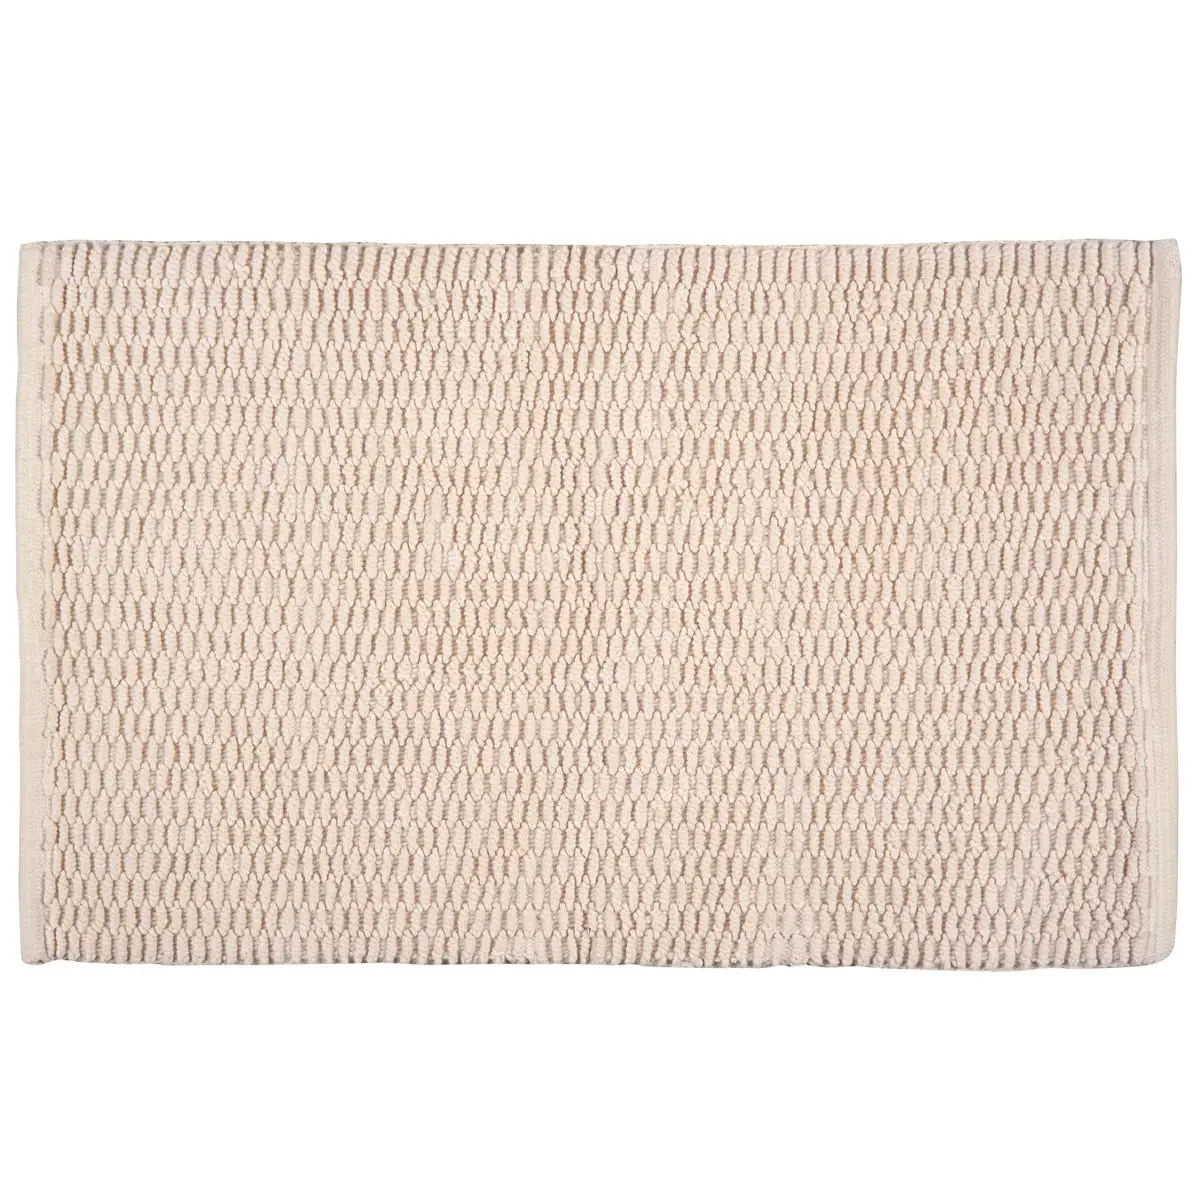 Badematte,100% Baumwolle, 50 x 80 cm